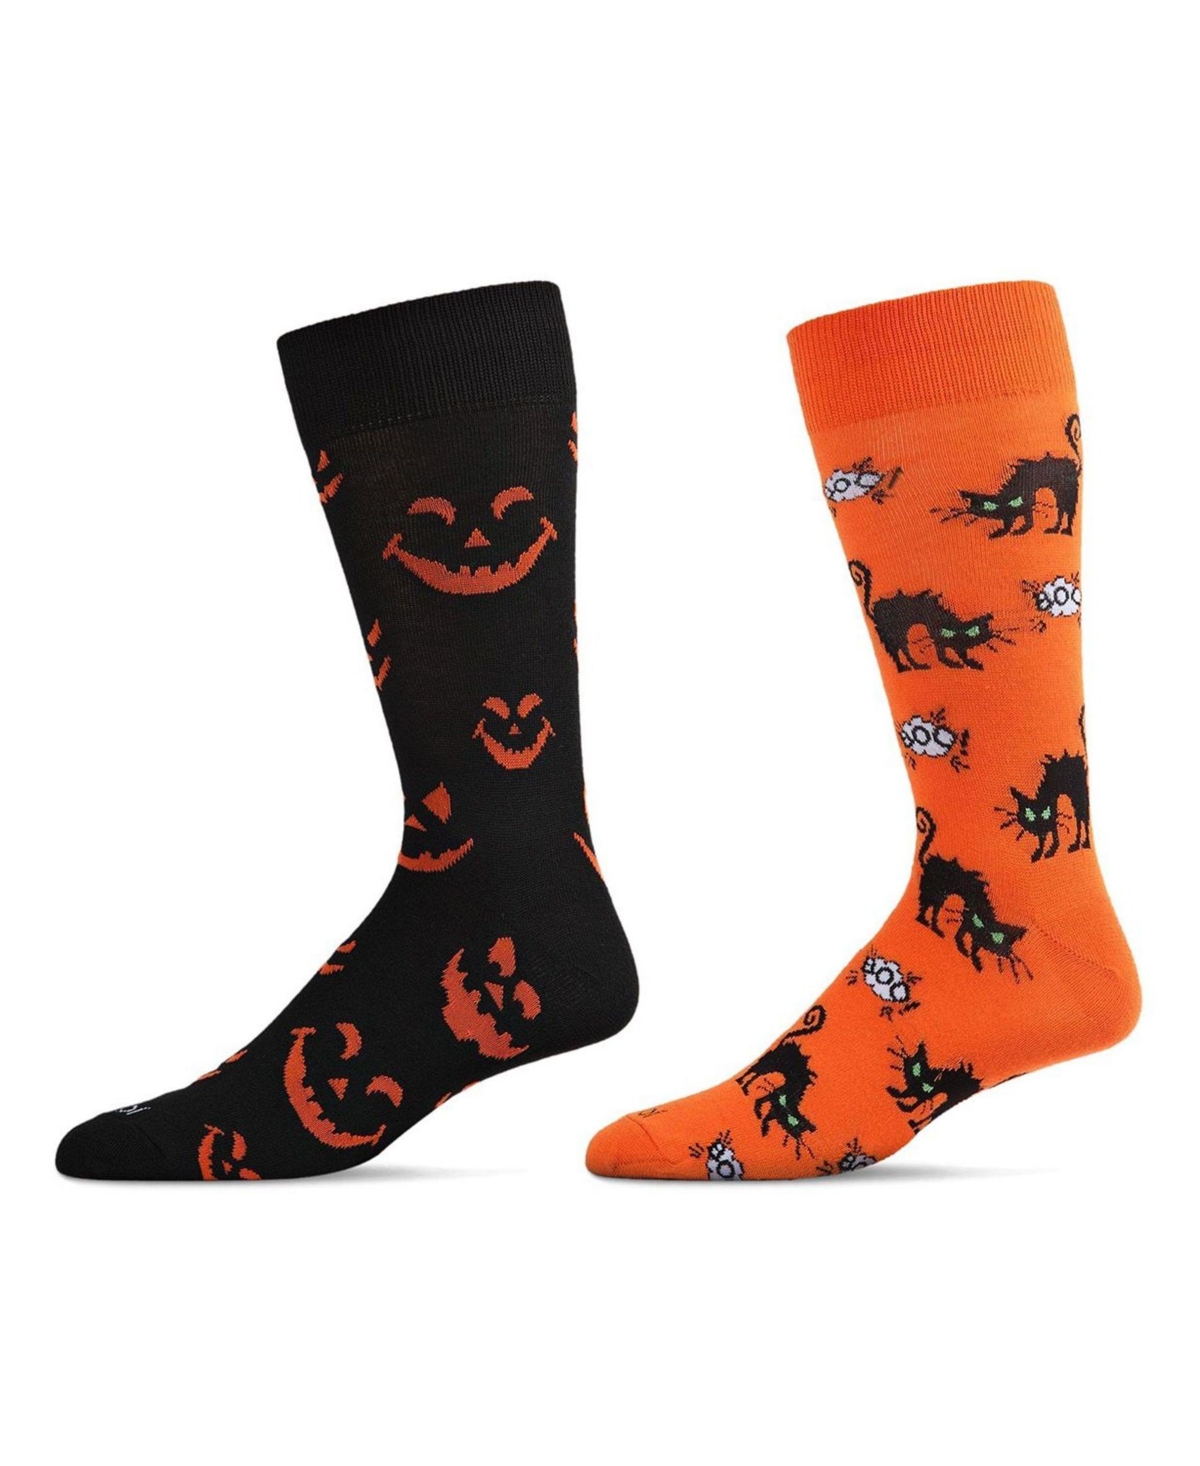 Men's Halloween Pair Novelty Socks, Pack of 2 - Black Multi